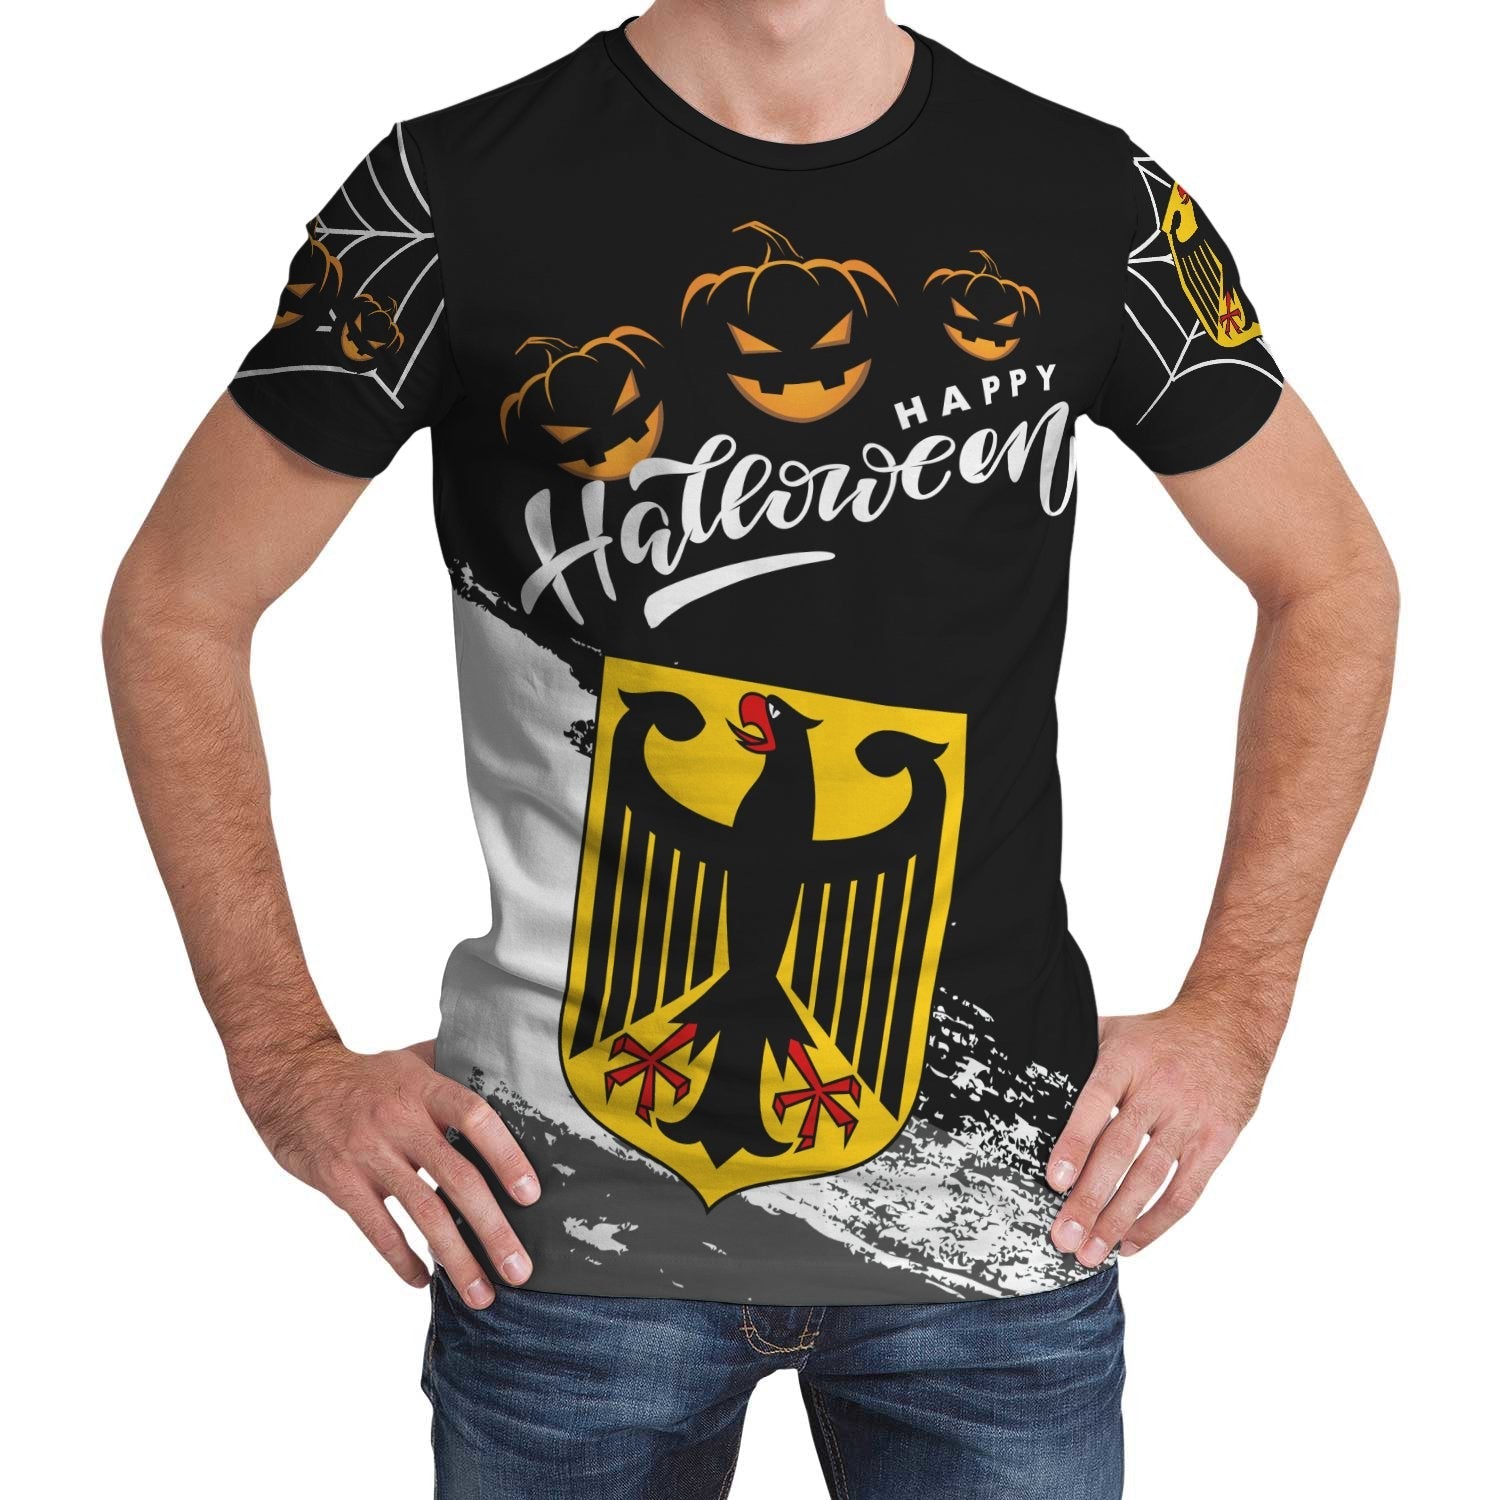 germany-halloween-t-shirt-womenmen